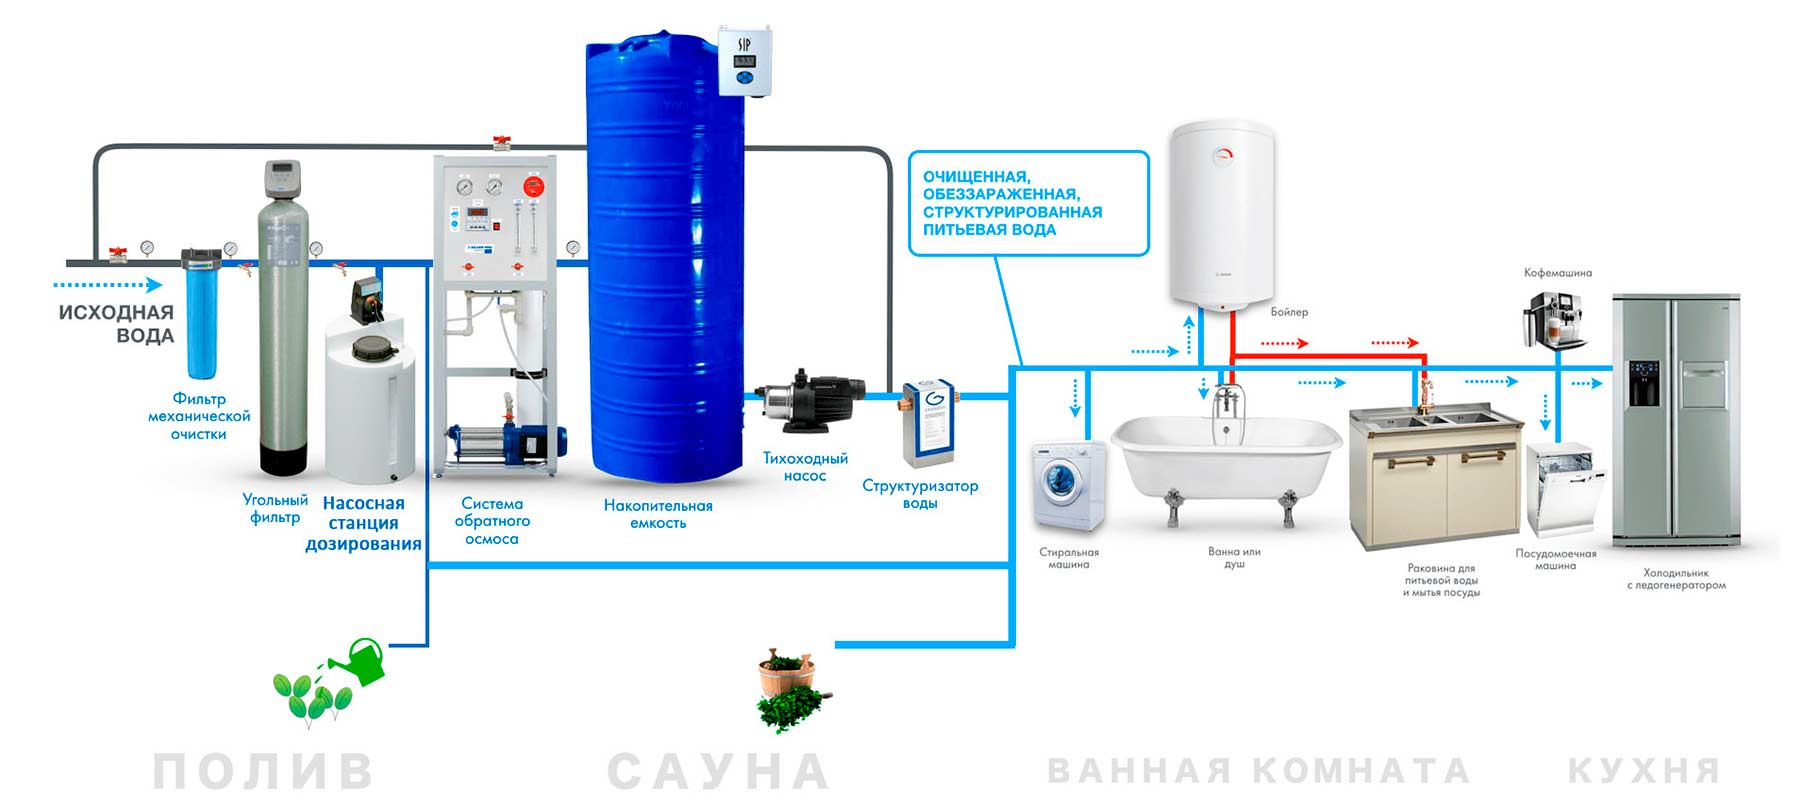 Система подготовки воды ETATRON в коттедже с использованием системы обратного осмоса высокой производительности.